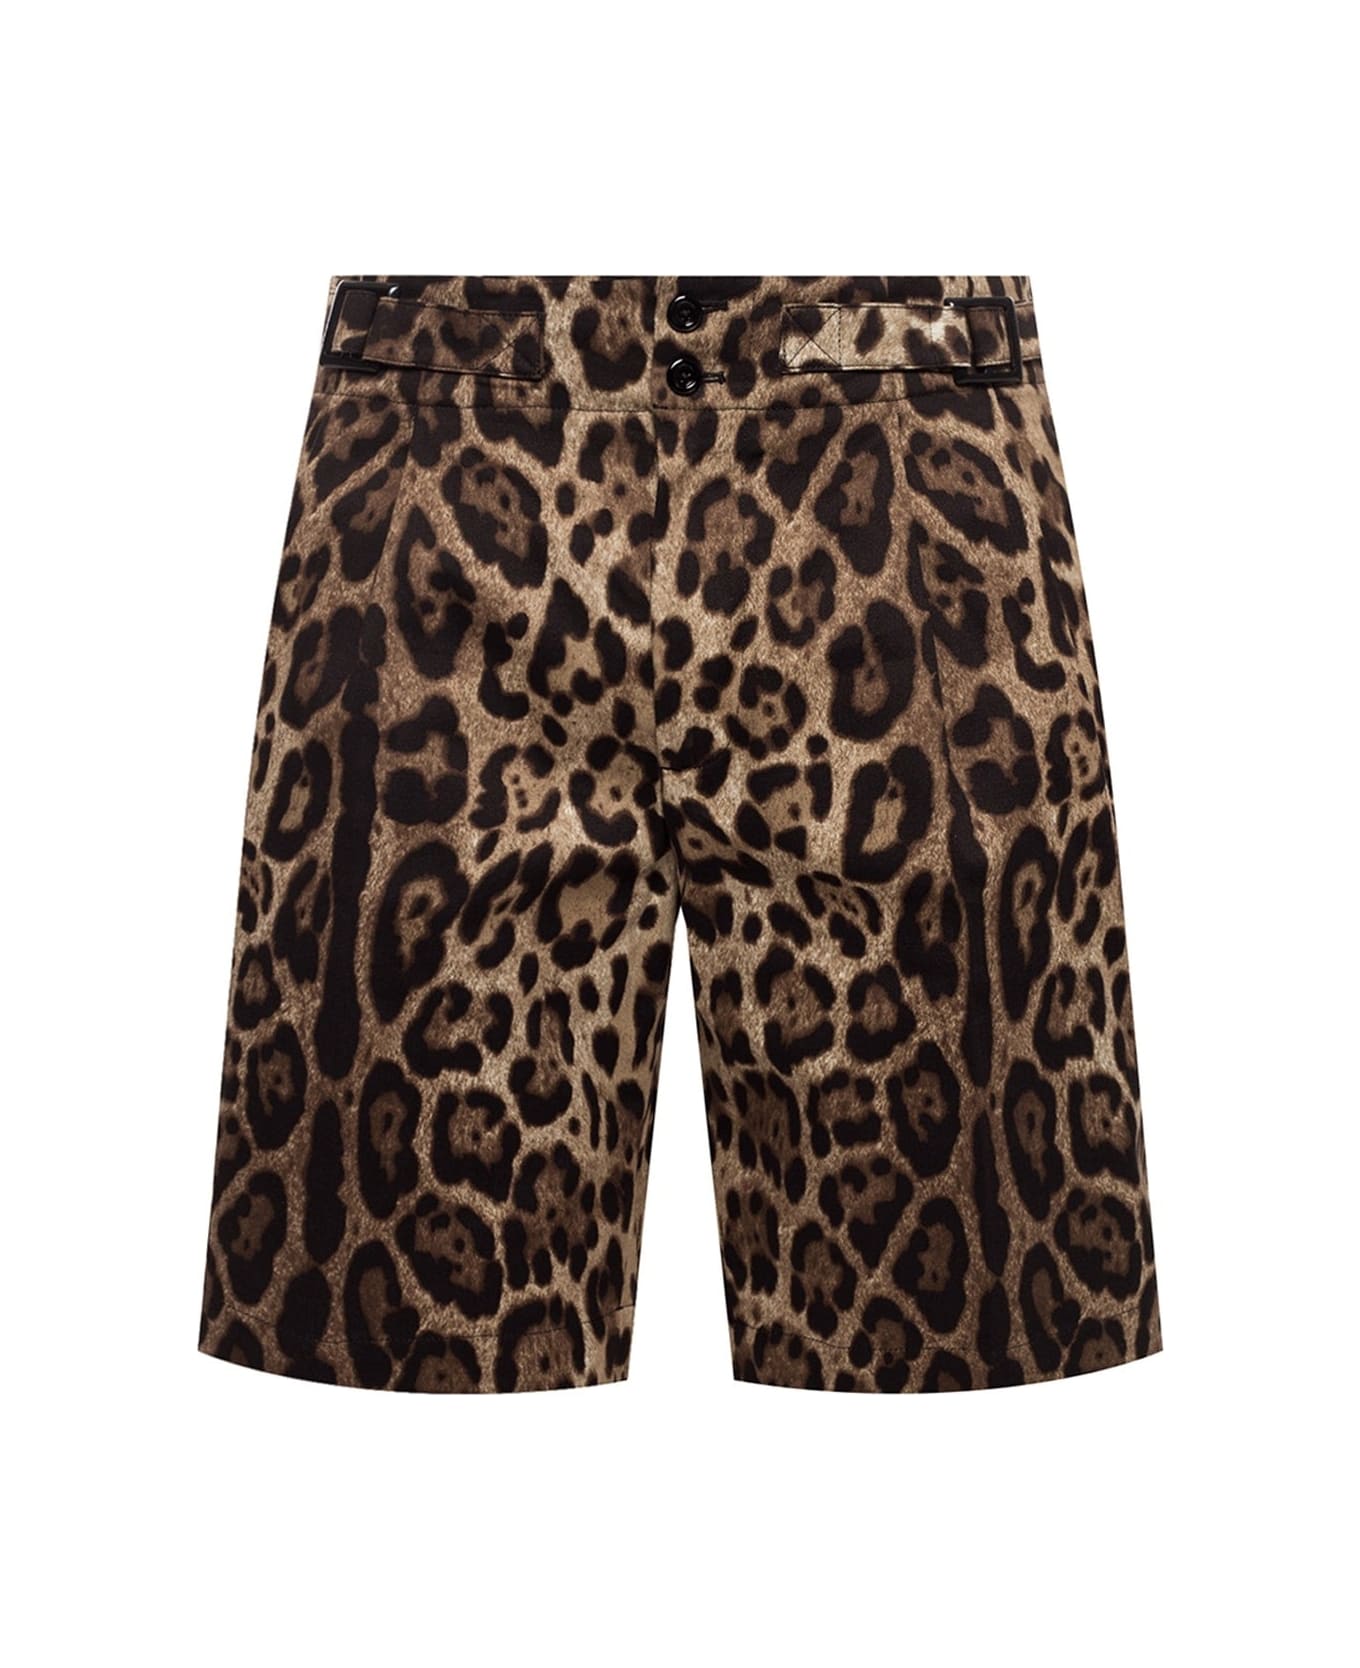 Dolce & Gabbana Bermuda Shorts - Brown